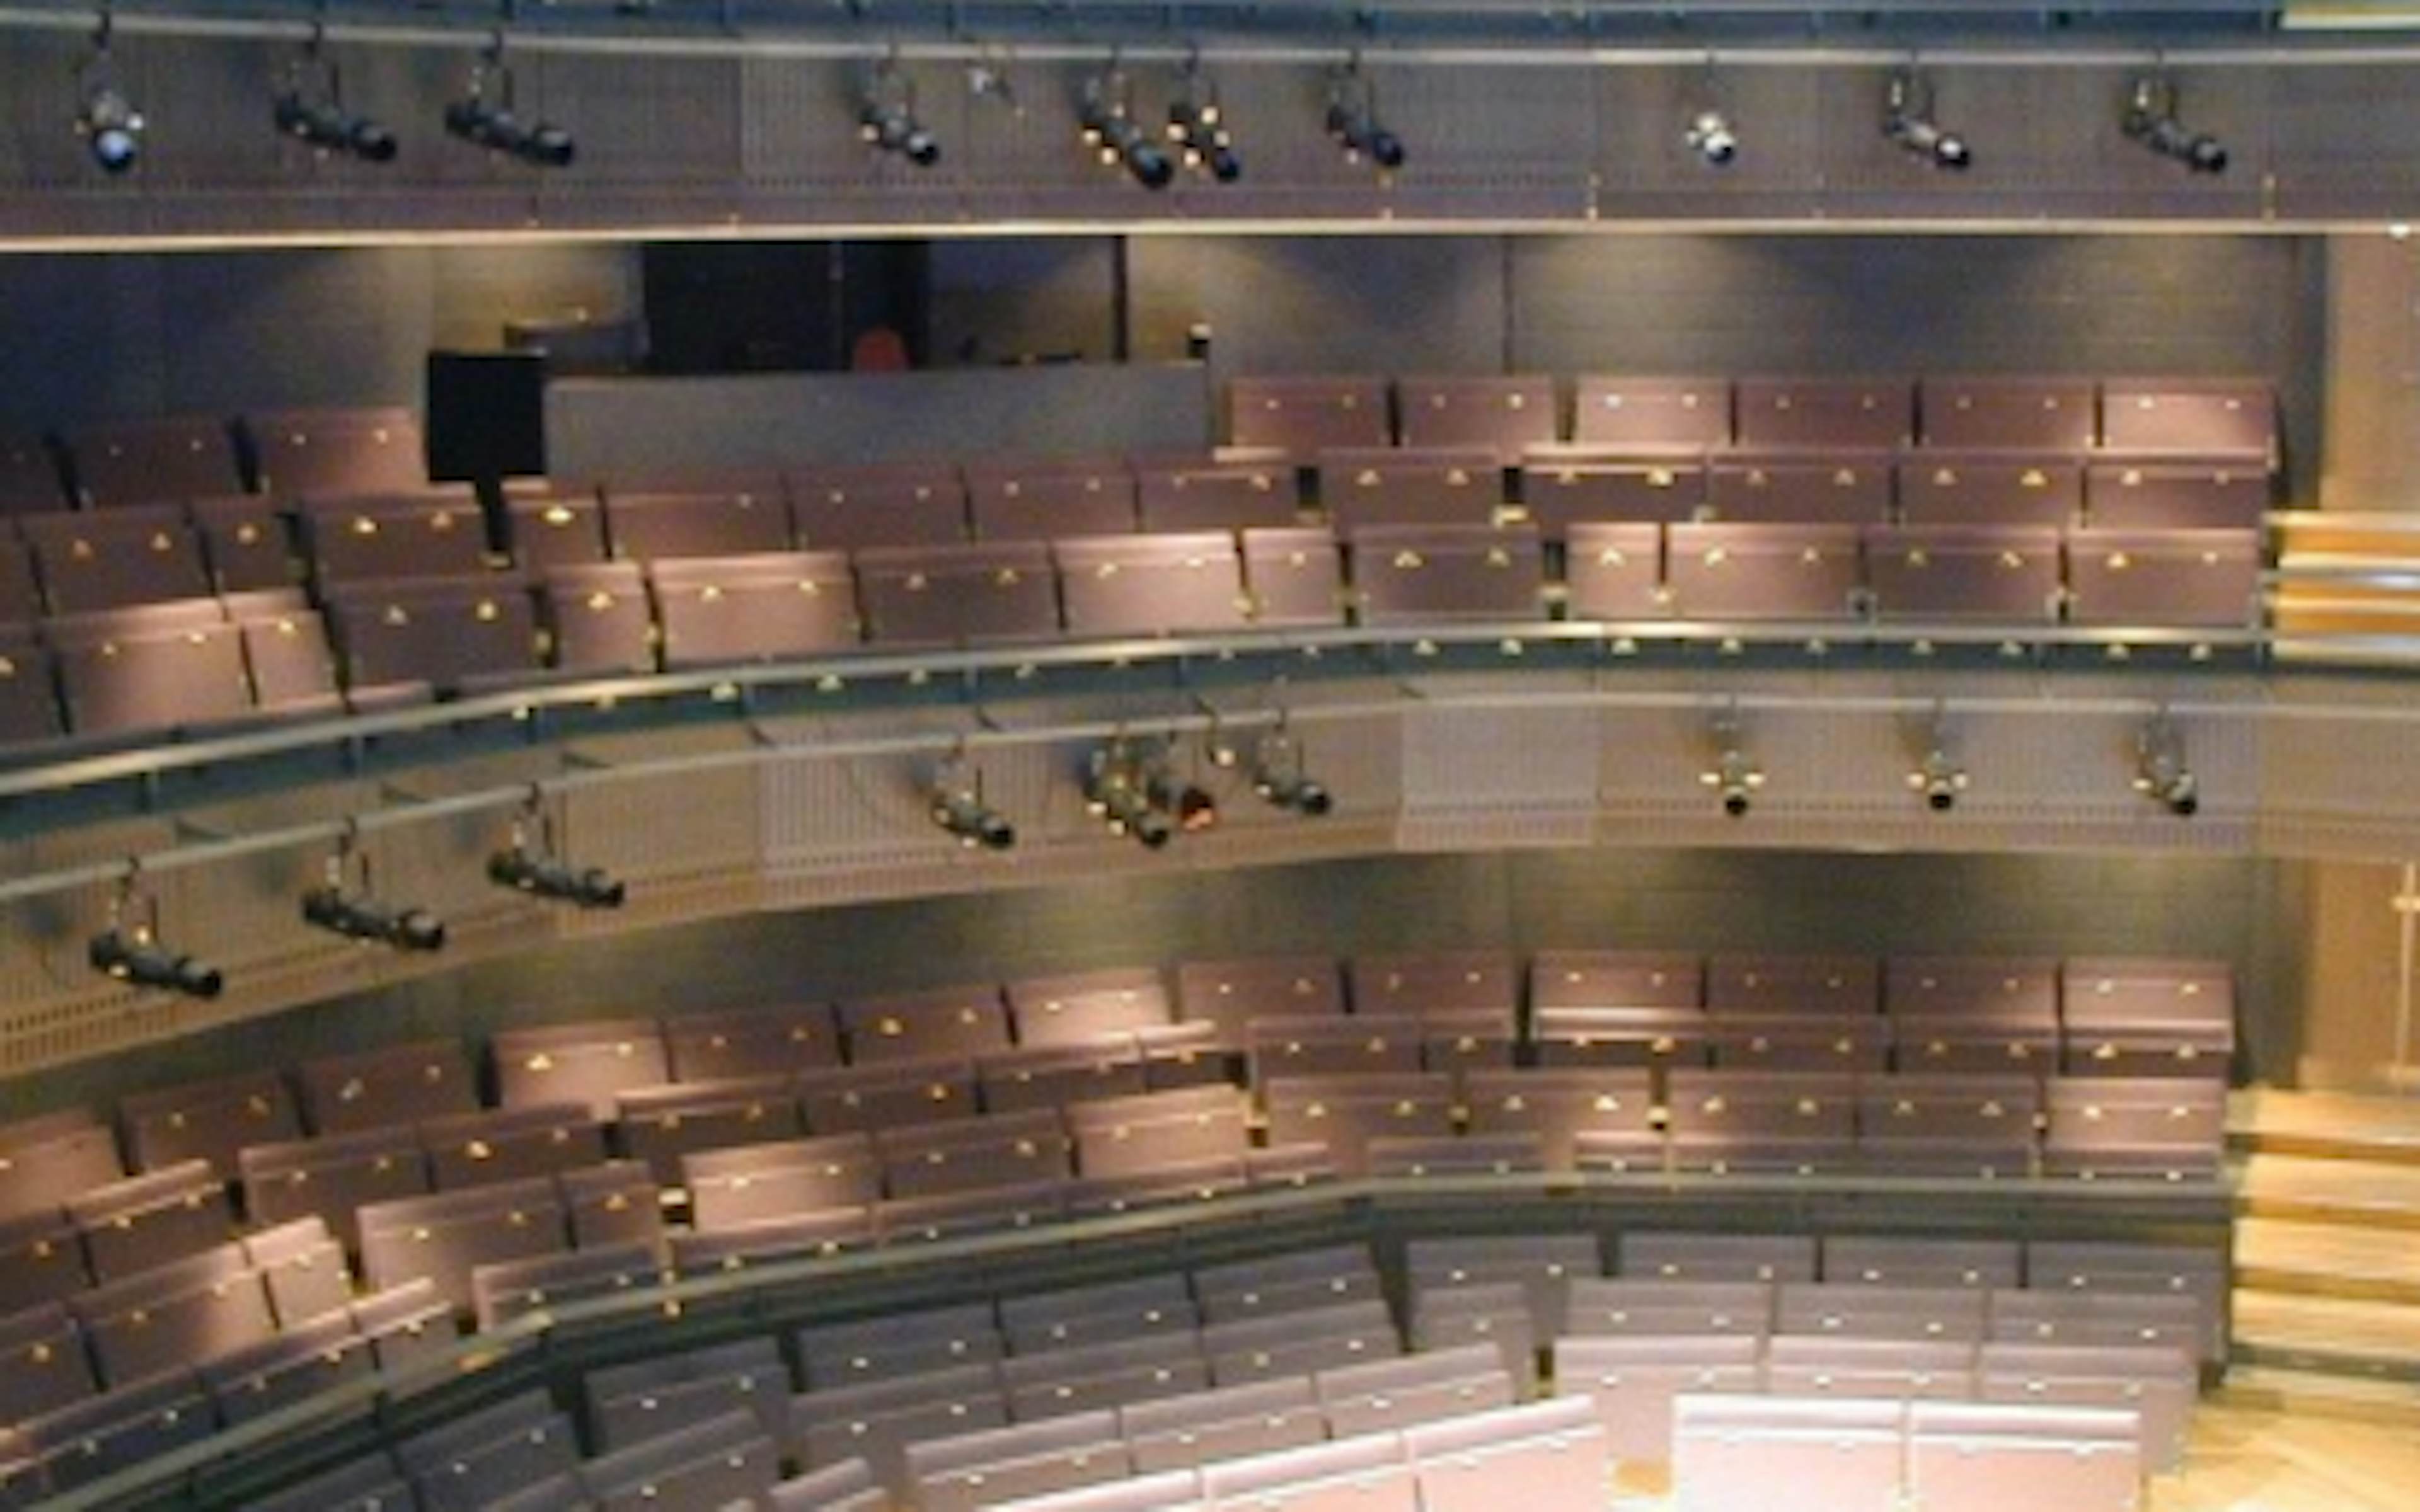 Main Auditorium - image